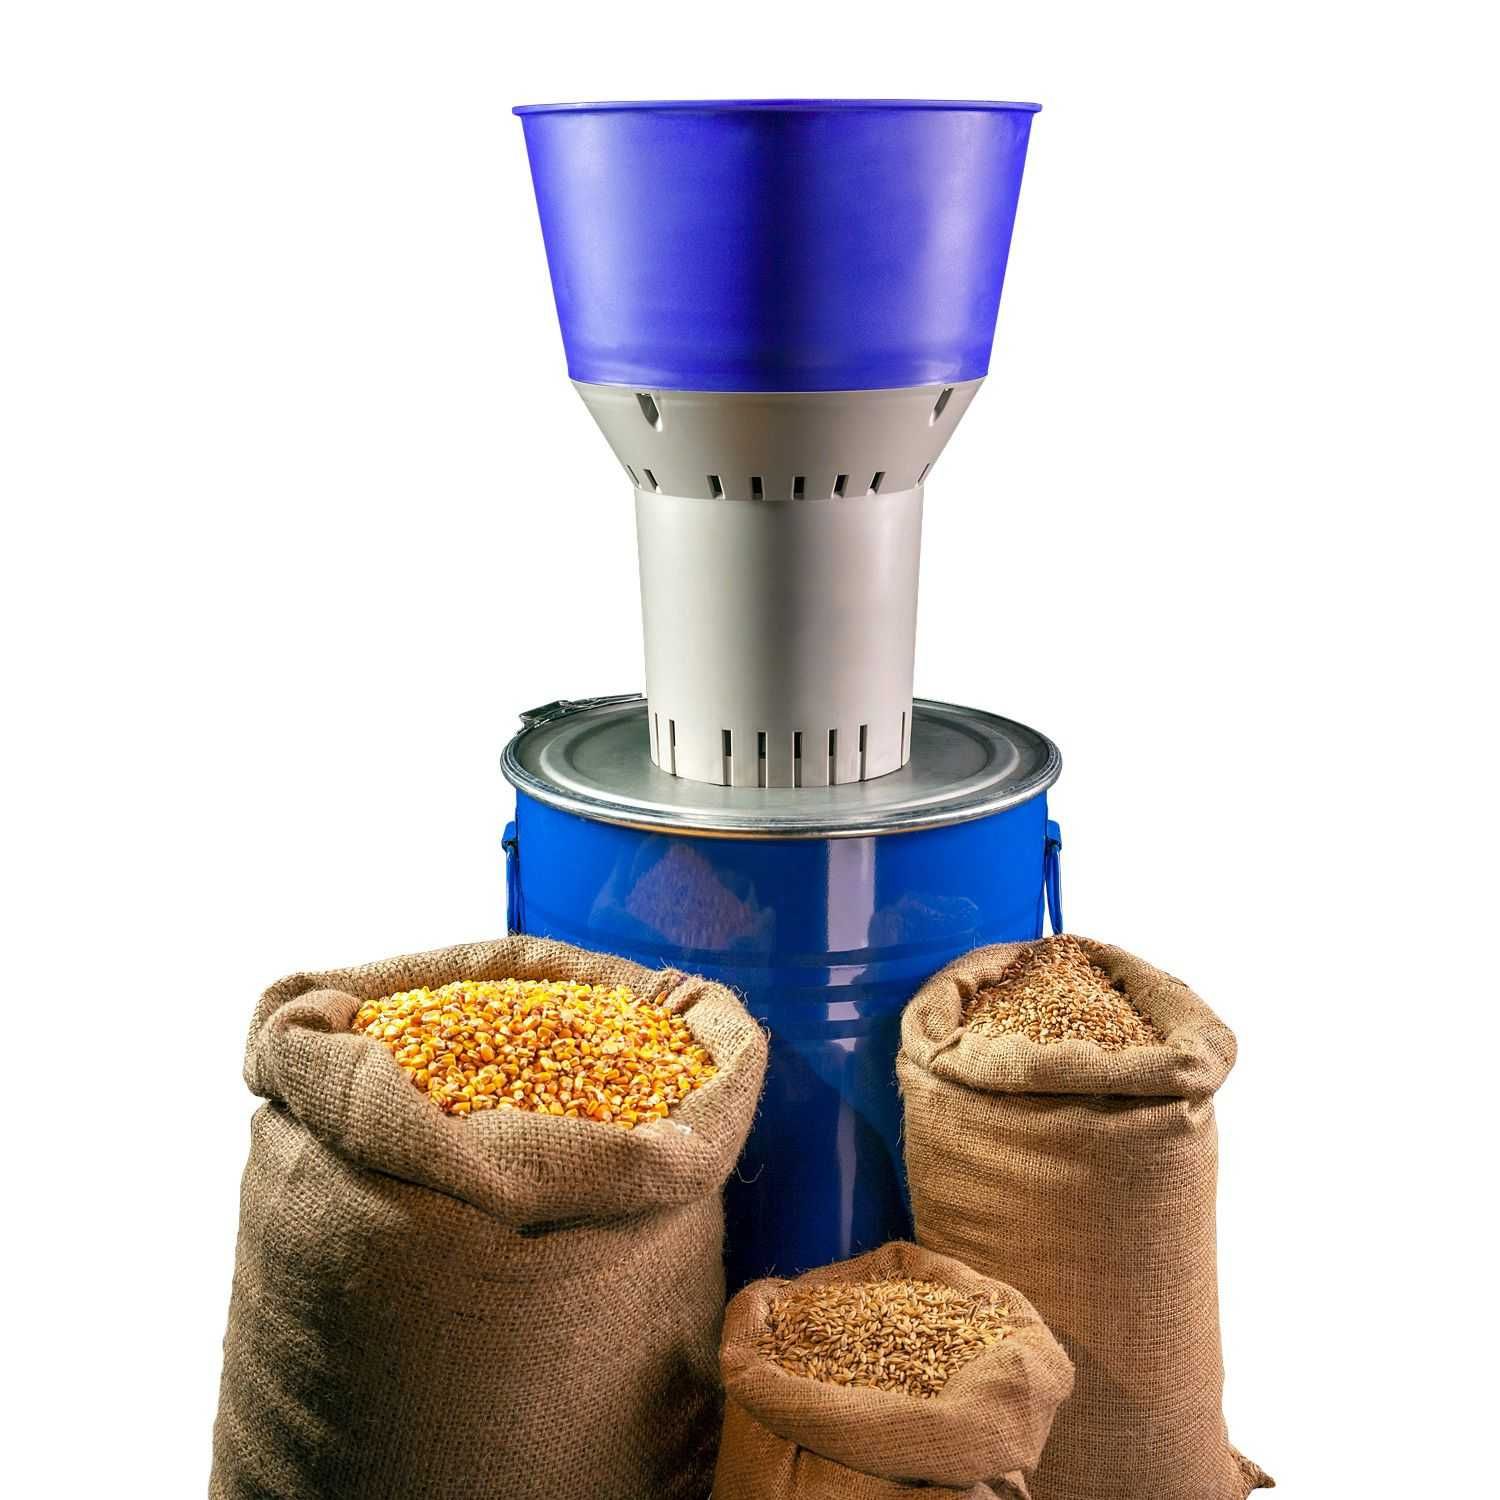 Moara de cereale EUROMIL 50 - 300 kg/ora - include 4 site diferite